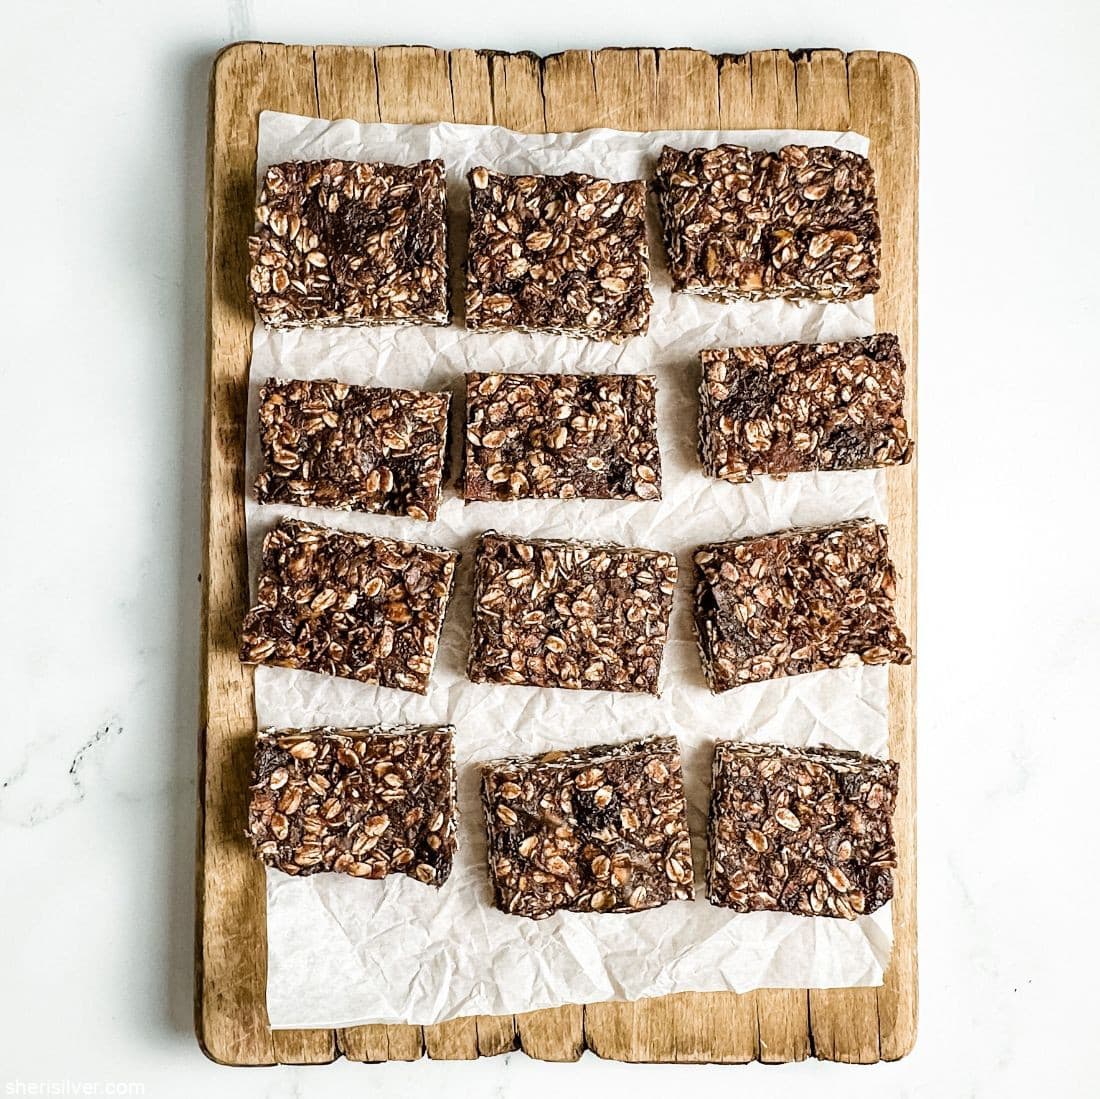 No bake chocolate granola bars (vegan & gluten free)!